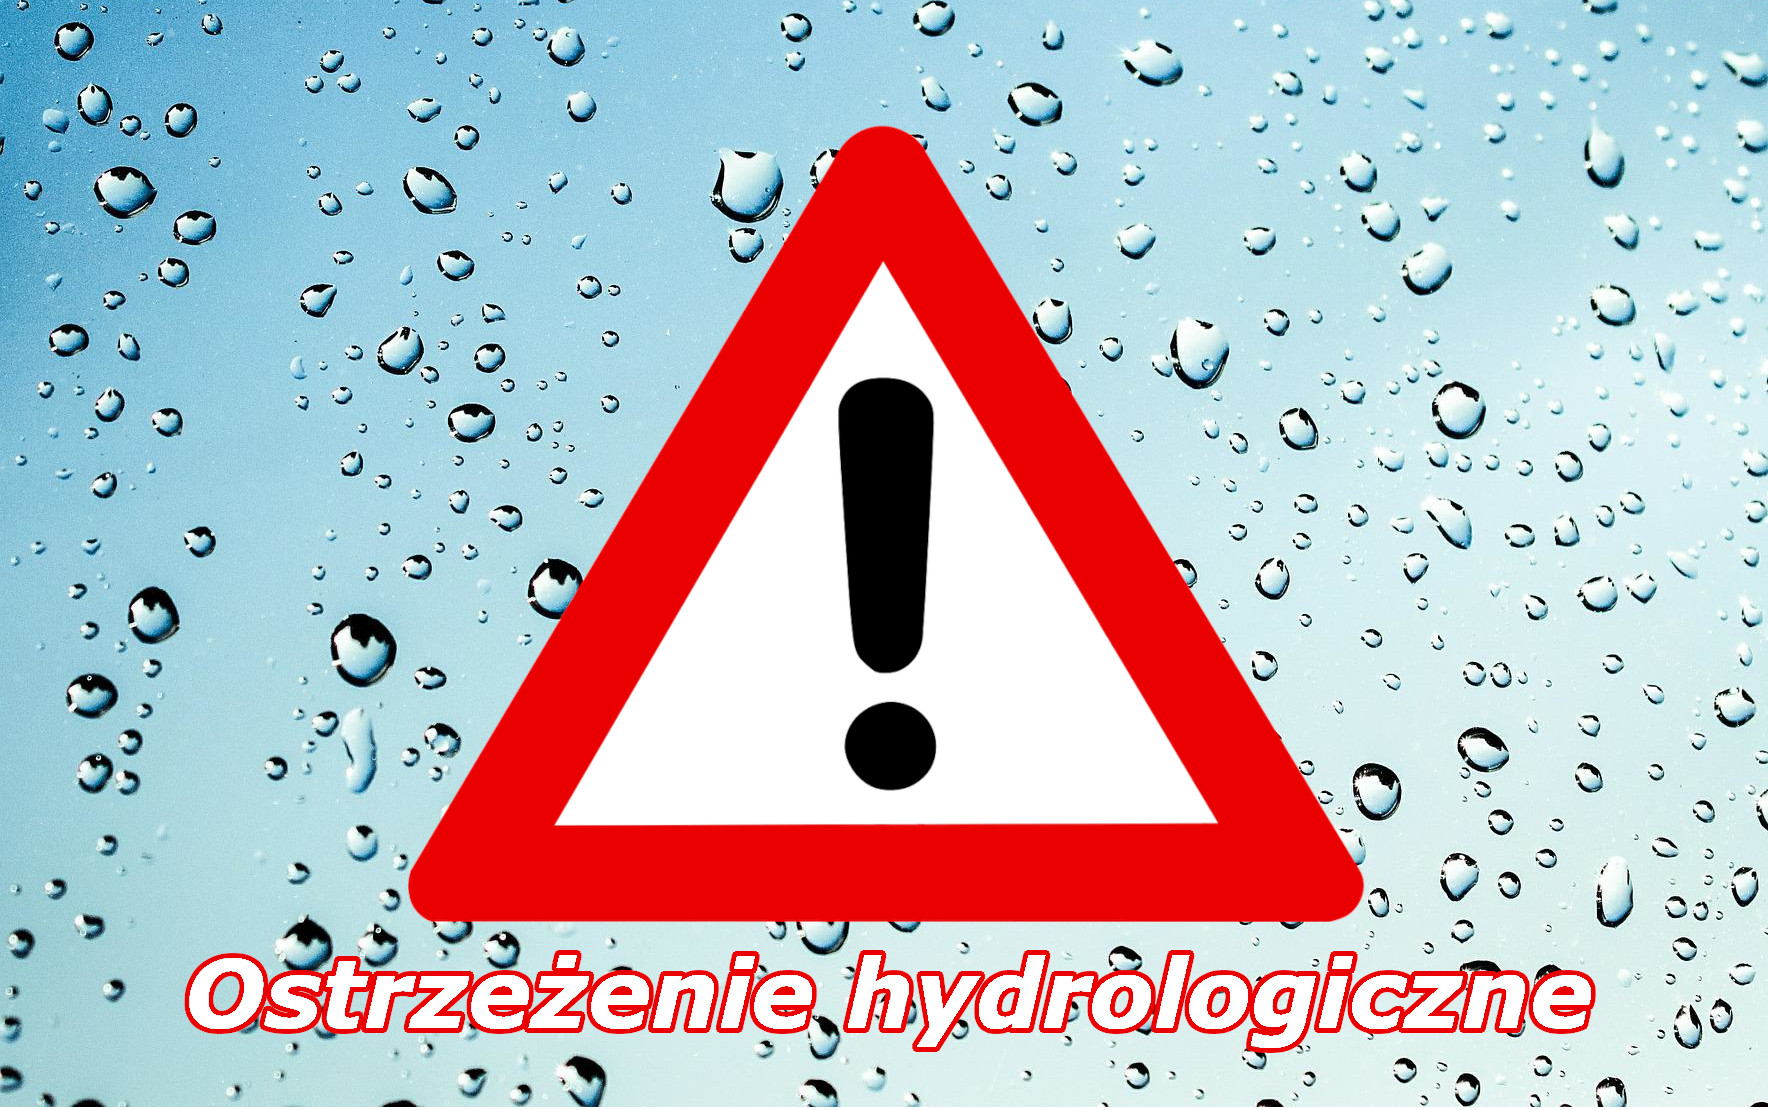 Zmiana ostrzeżenia hydrologicznego nr 207